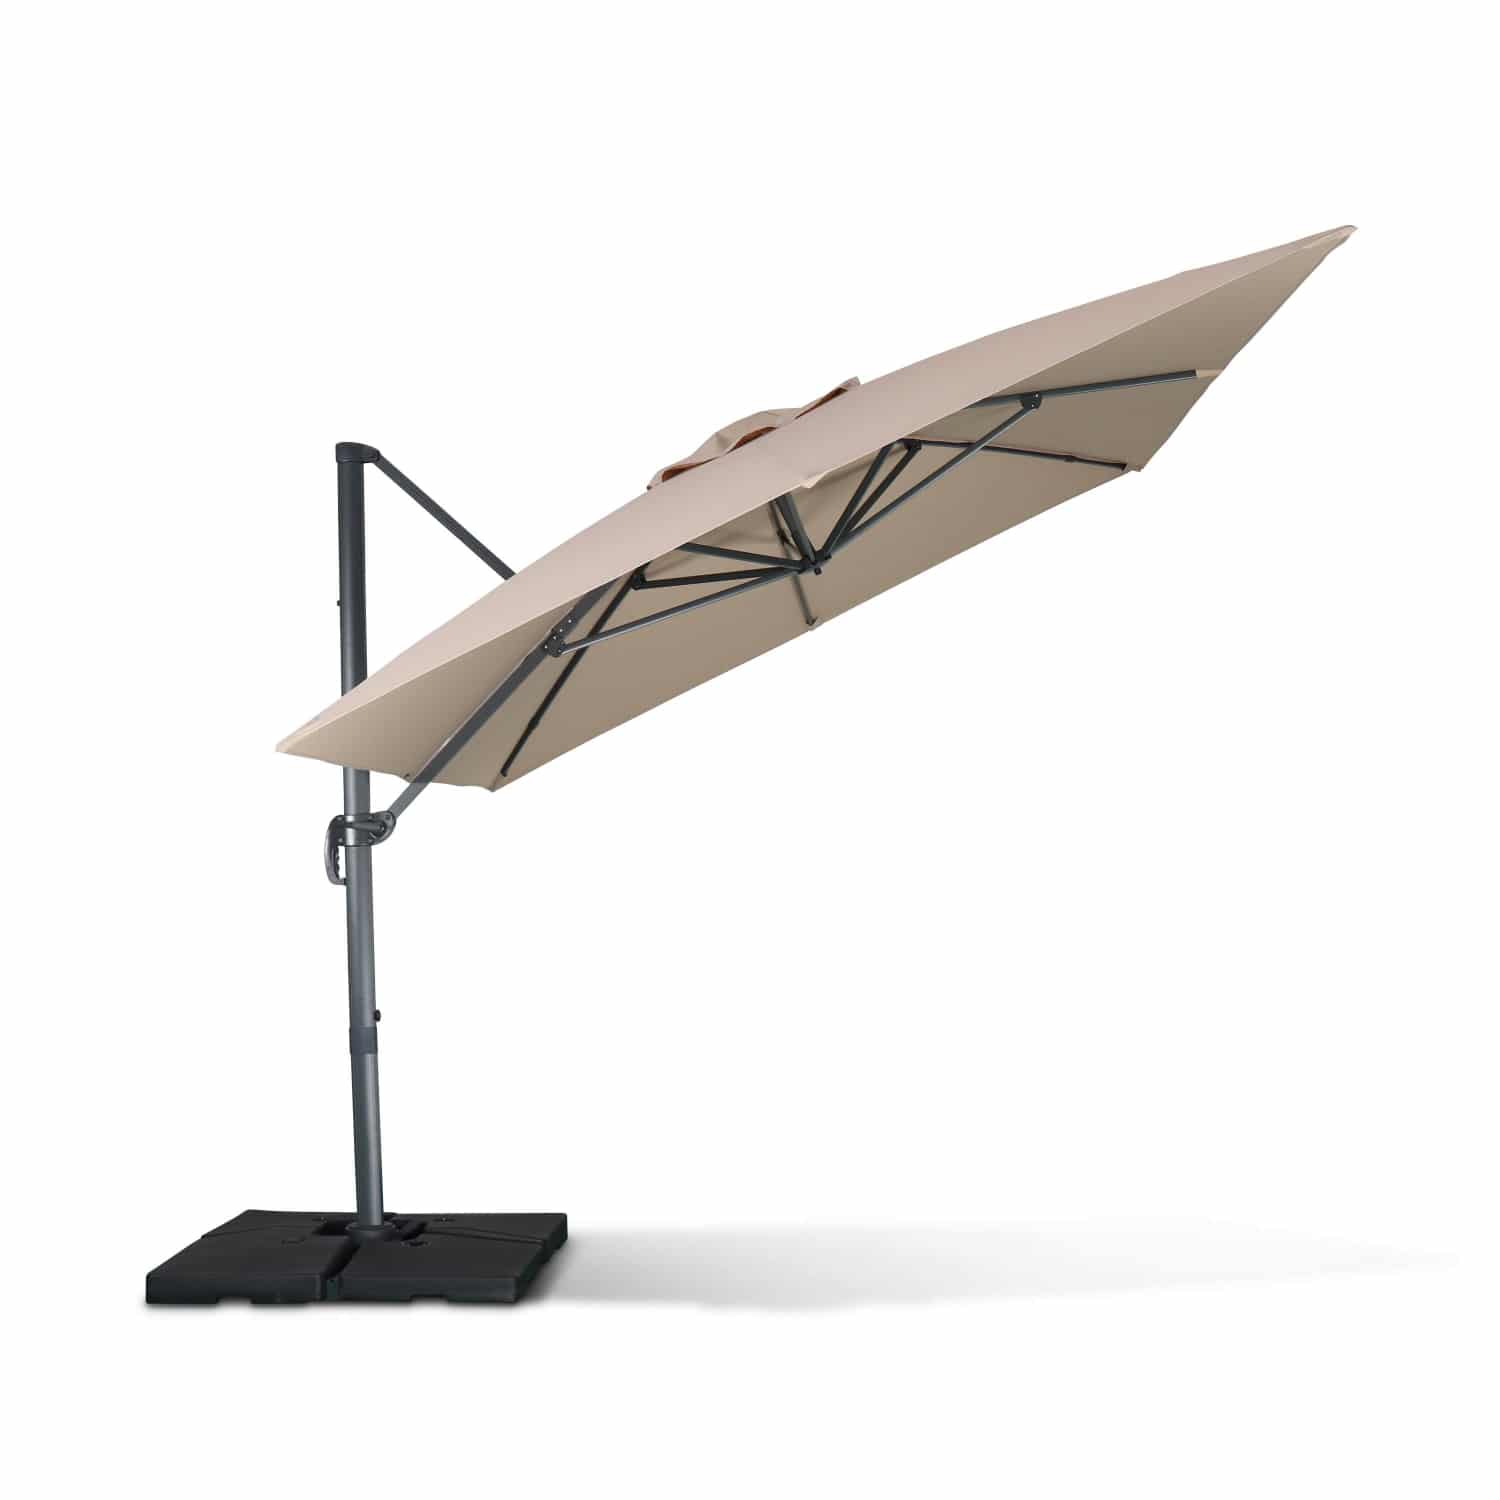 WIMEREUX 3x4m cantilever aluminium outdoor umbrella